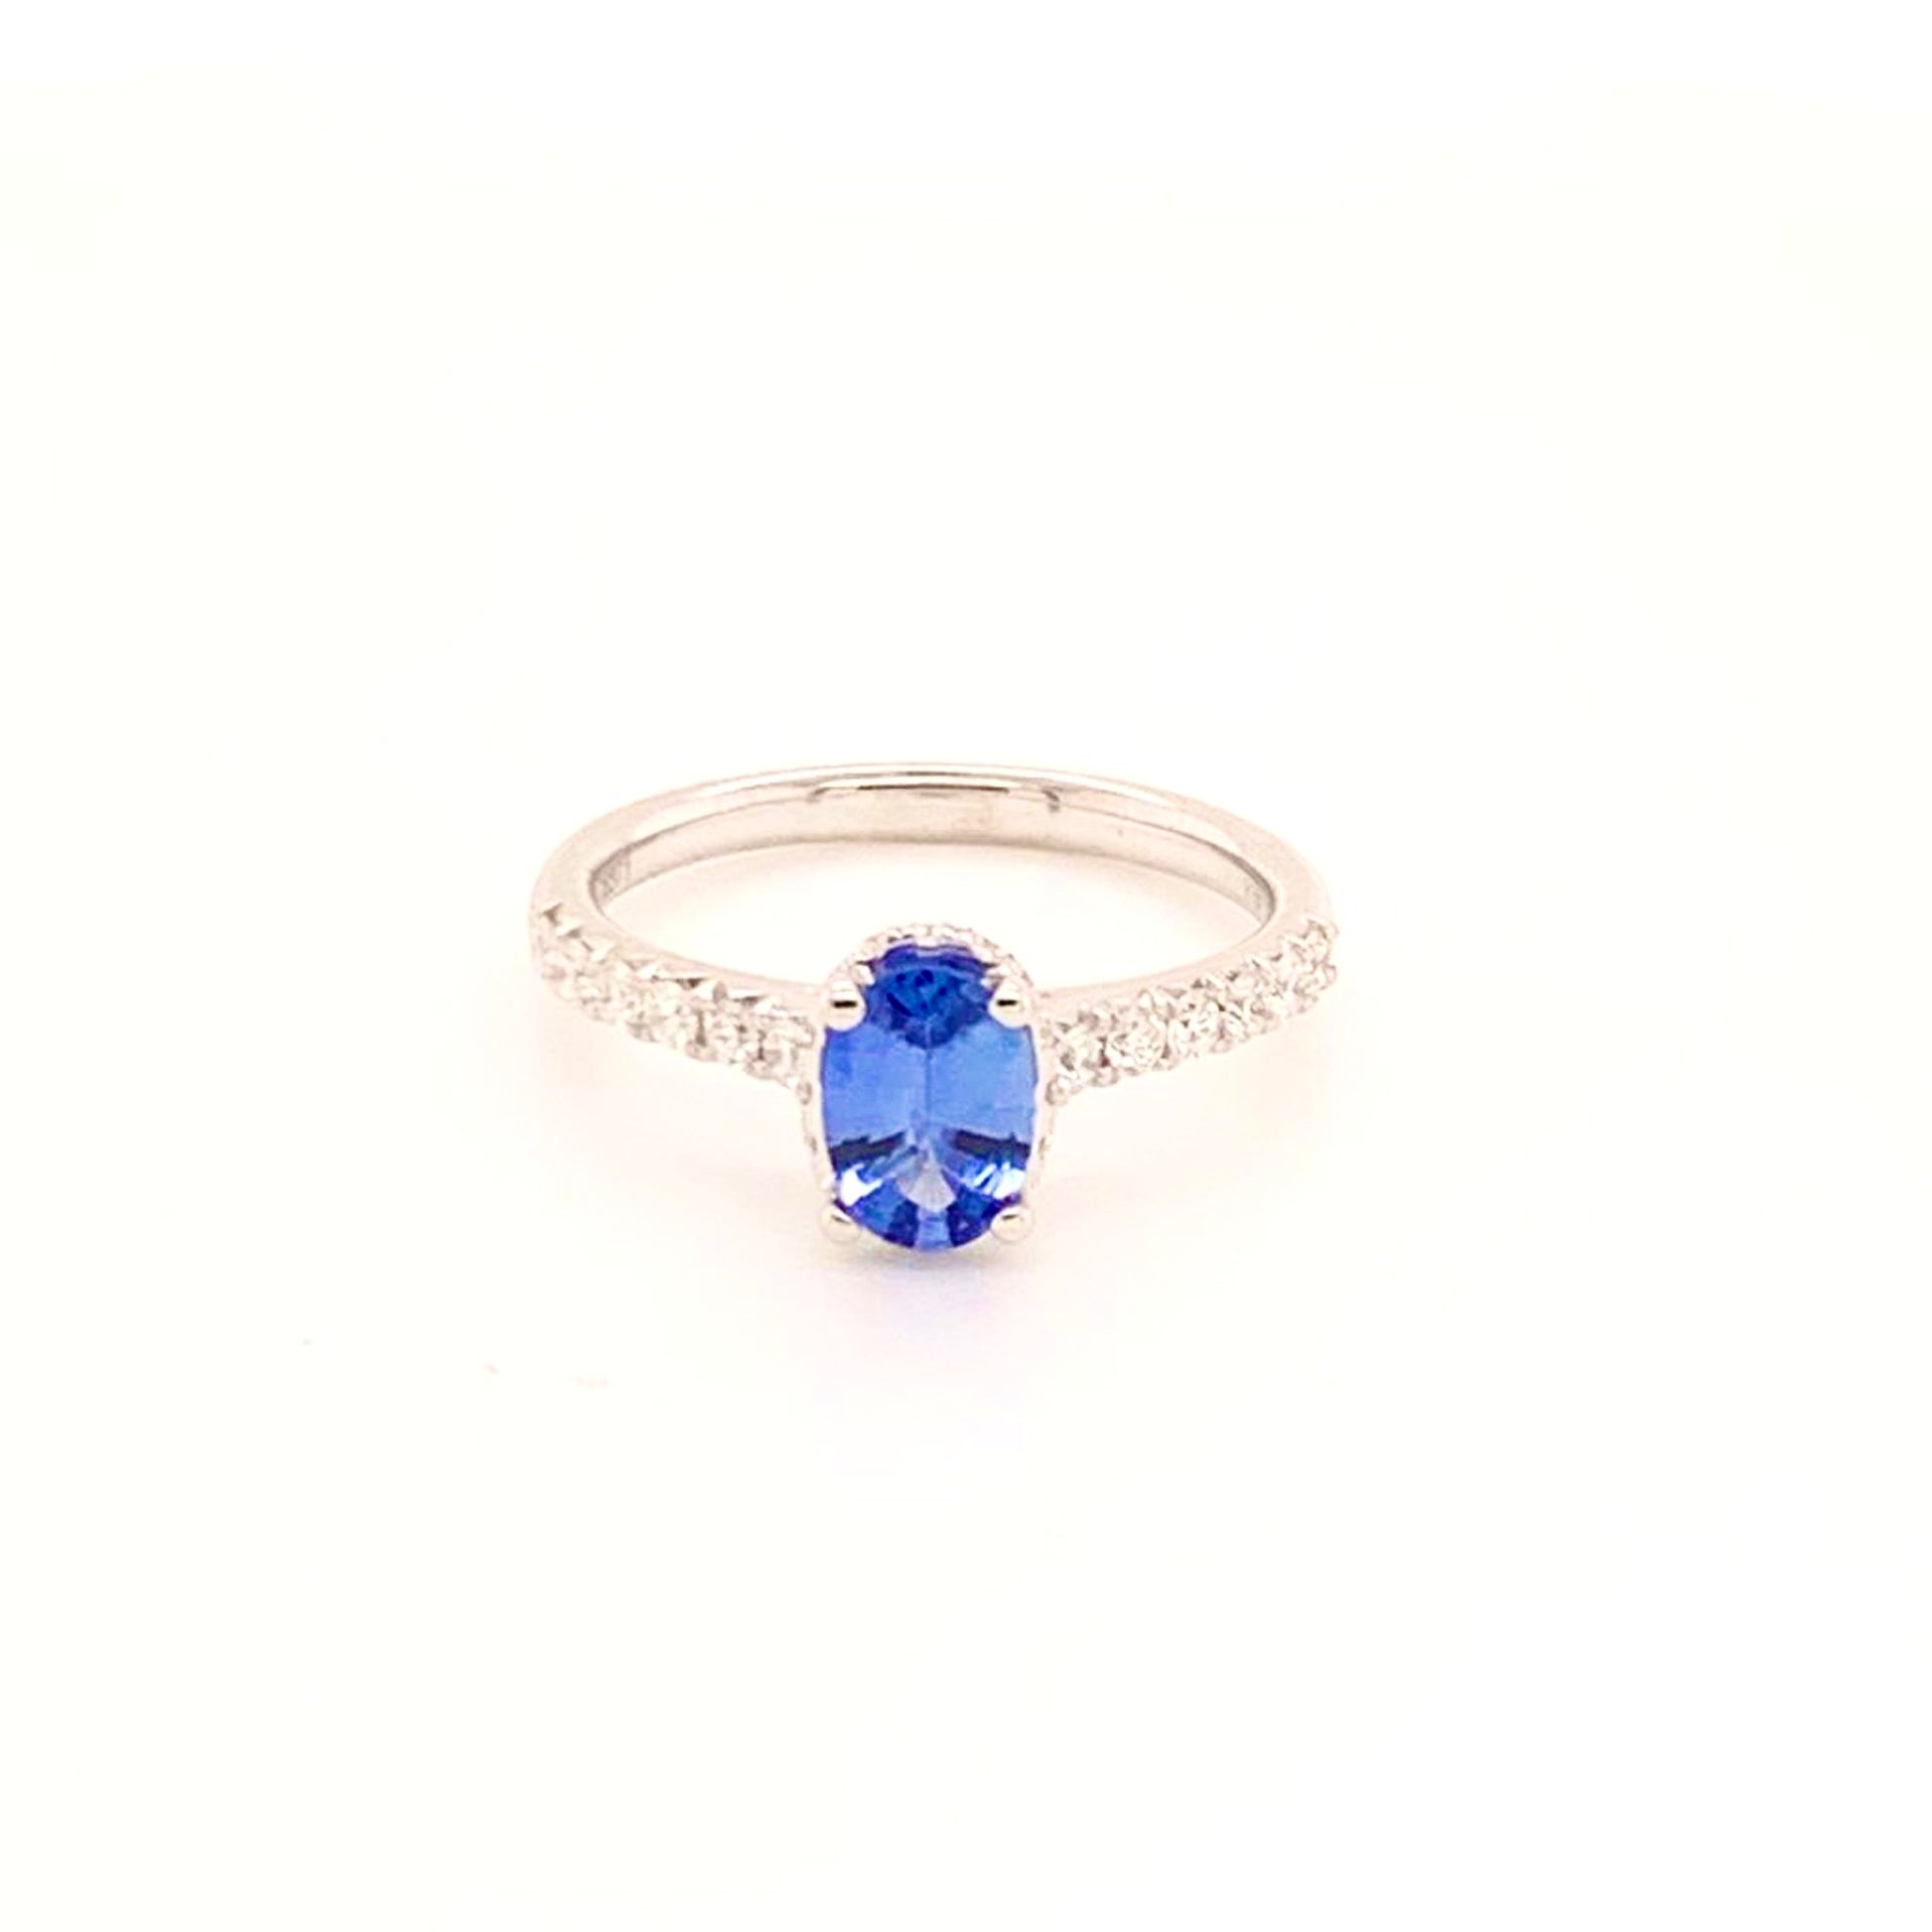 Diamond Sapphire Ring 18k Gold Women 1.725 TCW Certified $3990 913137 - Certified Fine Jewelry